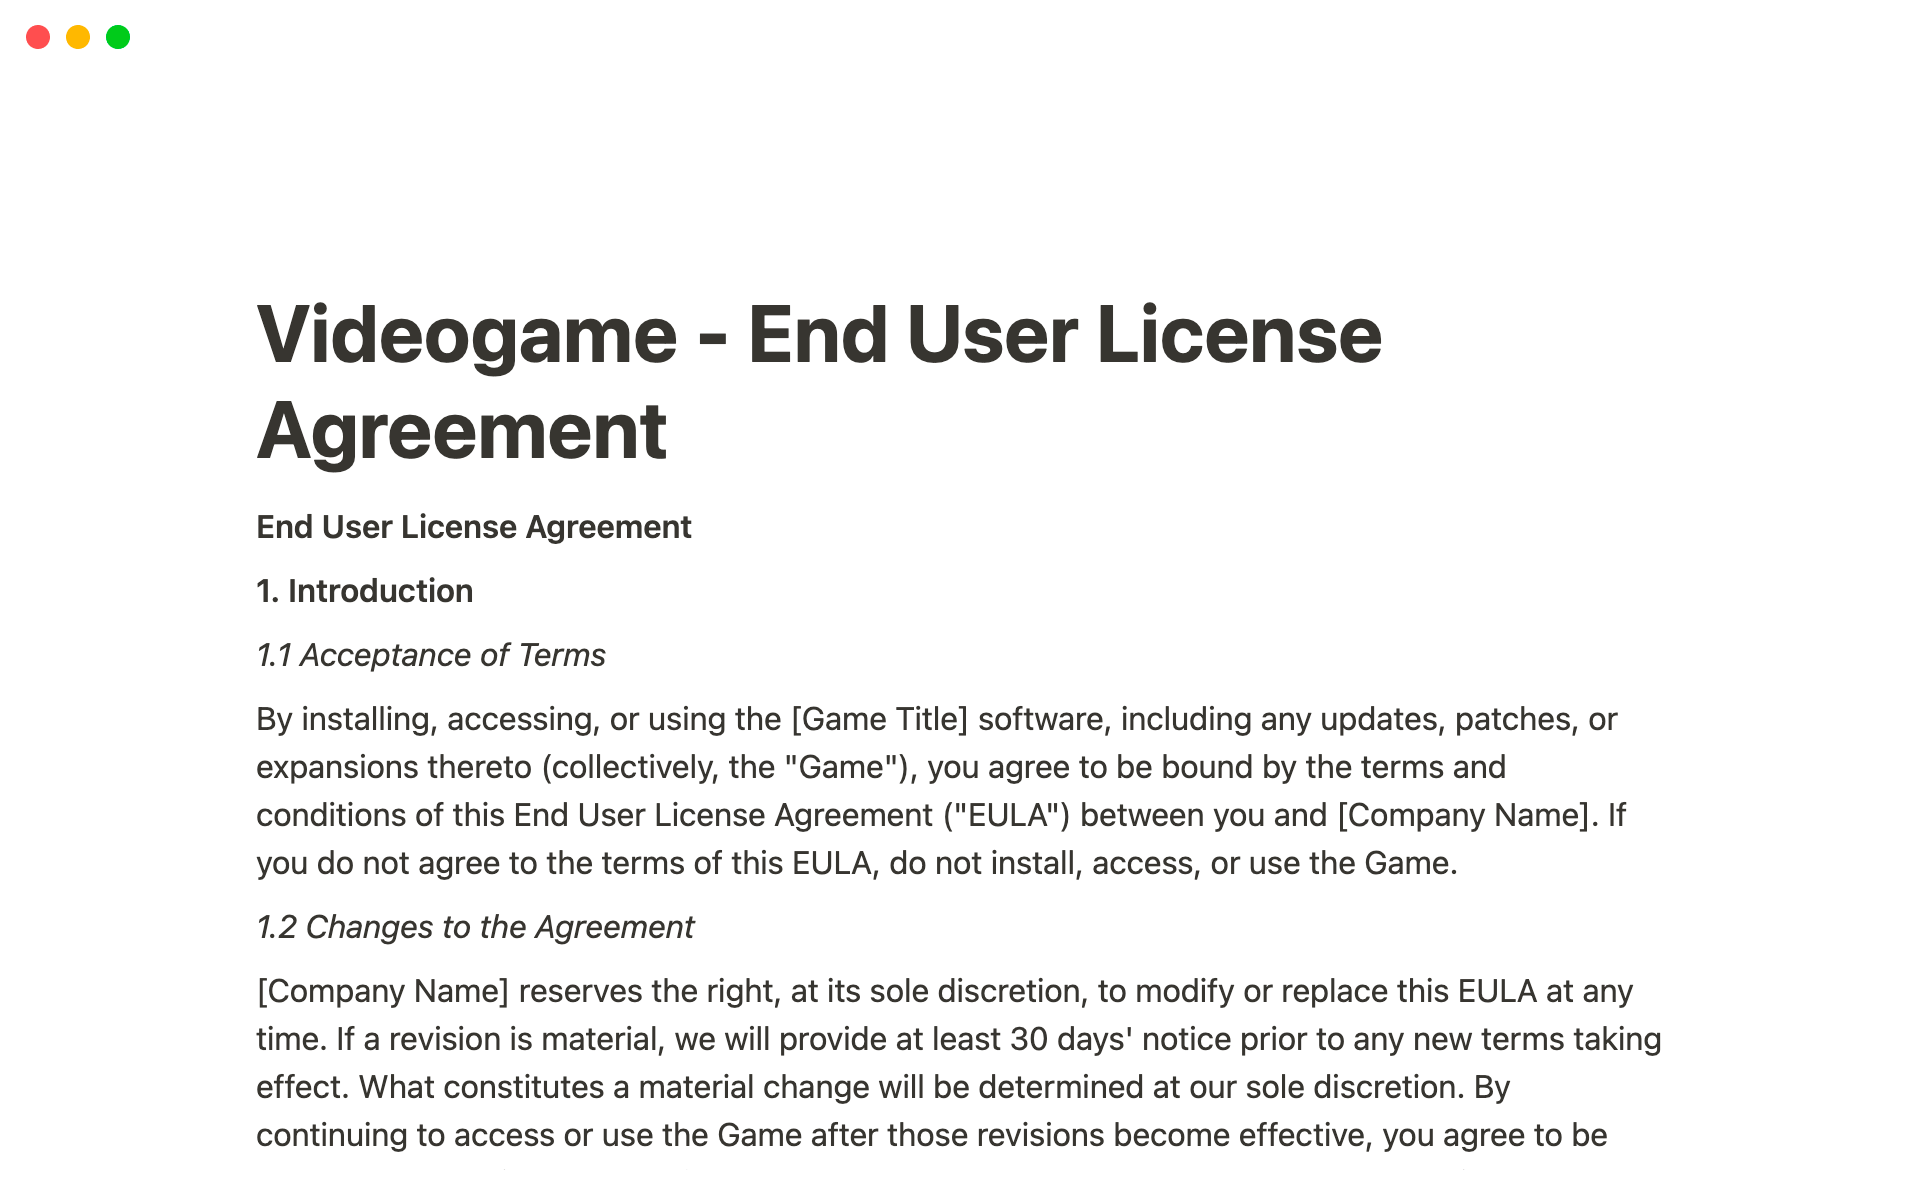 Uma prévia do modelo para Videogame - End User License Agreement